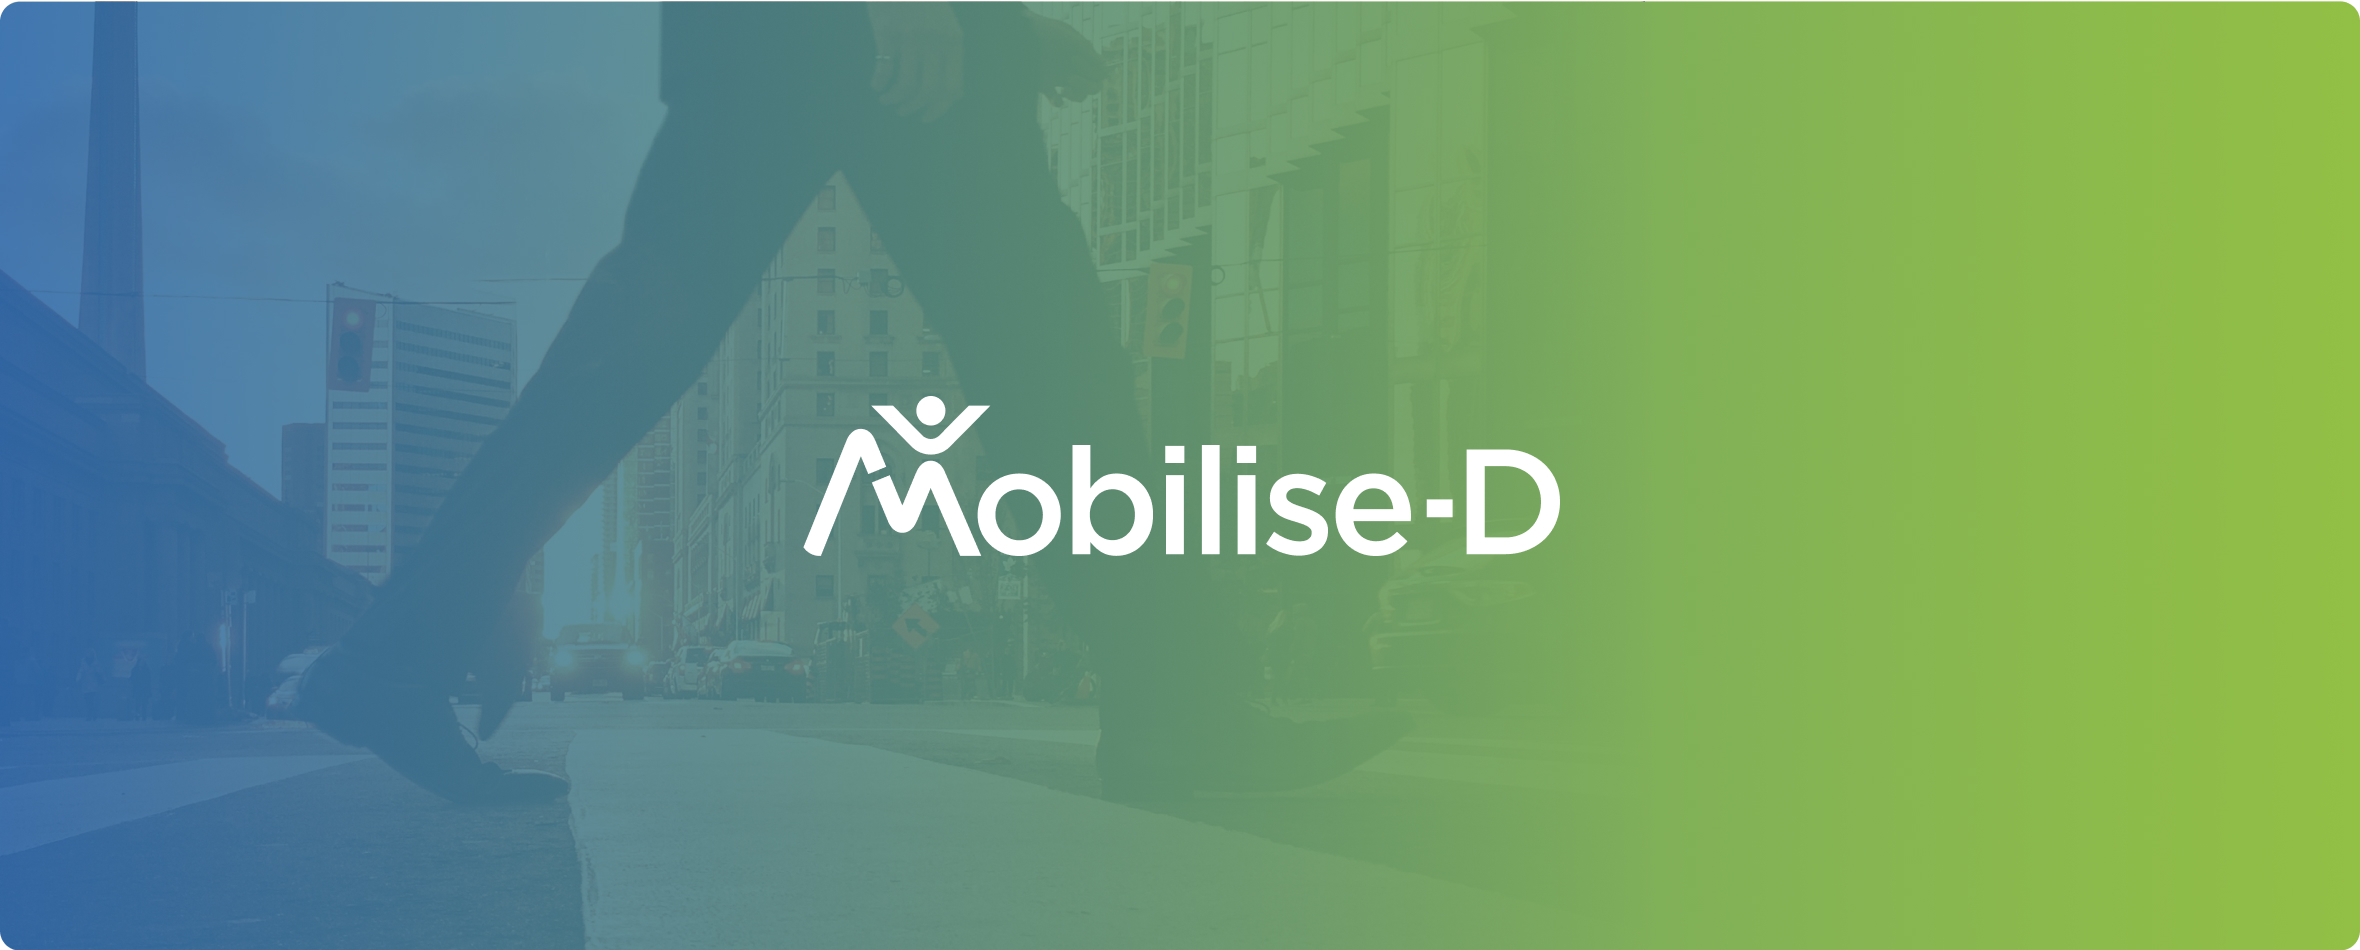 Mobilise-D logo on gradient background colour